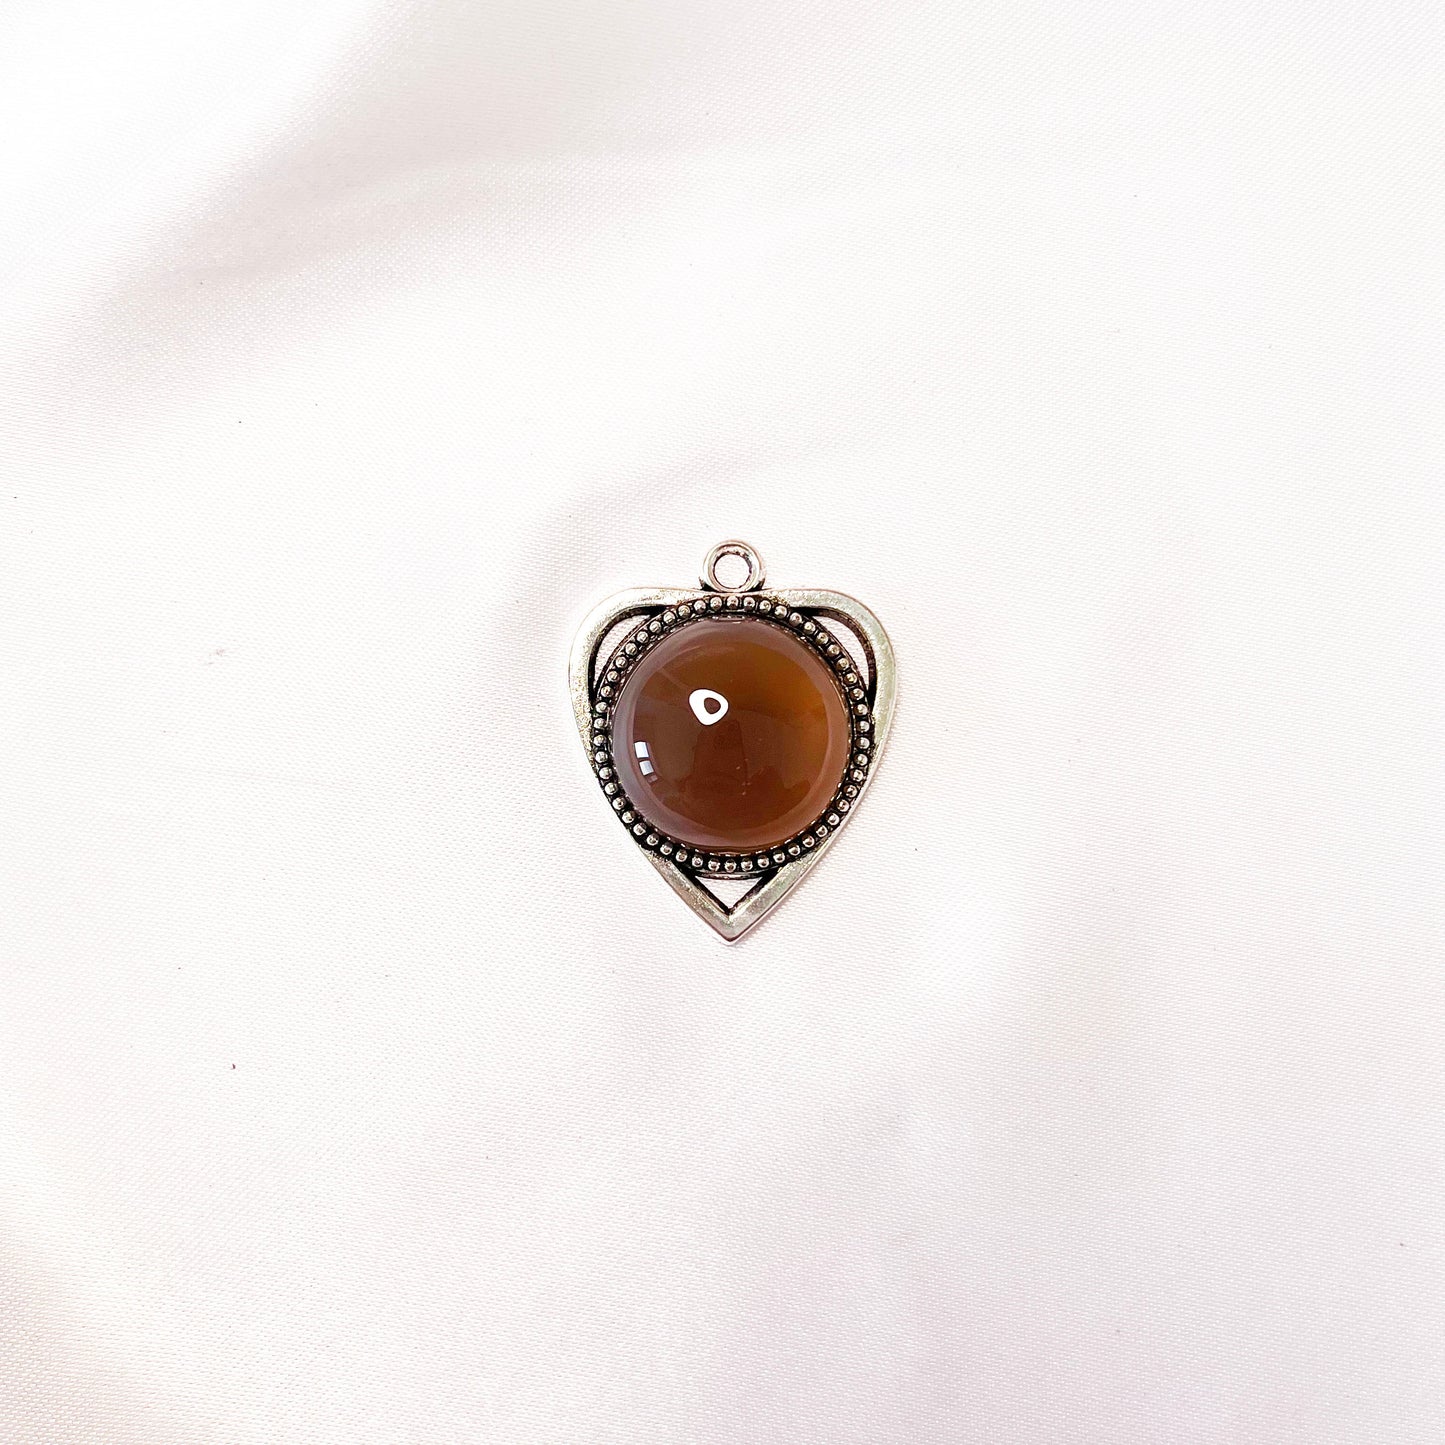 Heart shape pendant